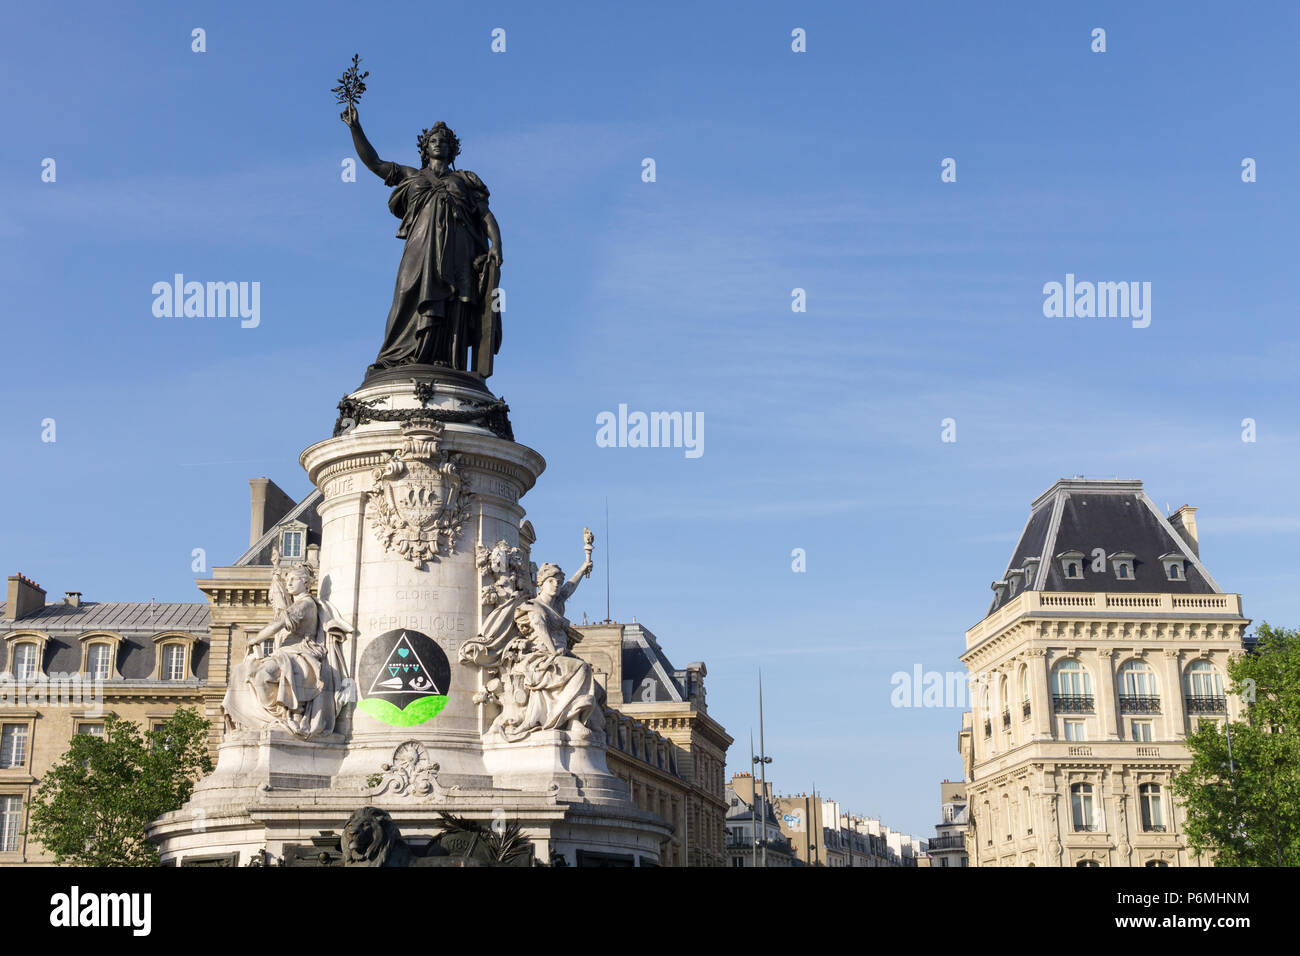 View of the Marianne statue at the Place de la Republique in Paris, France Stock Photo